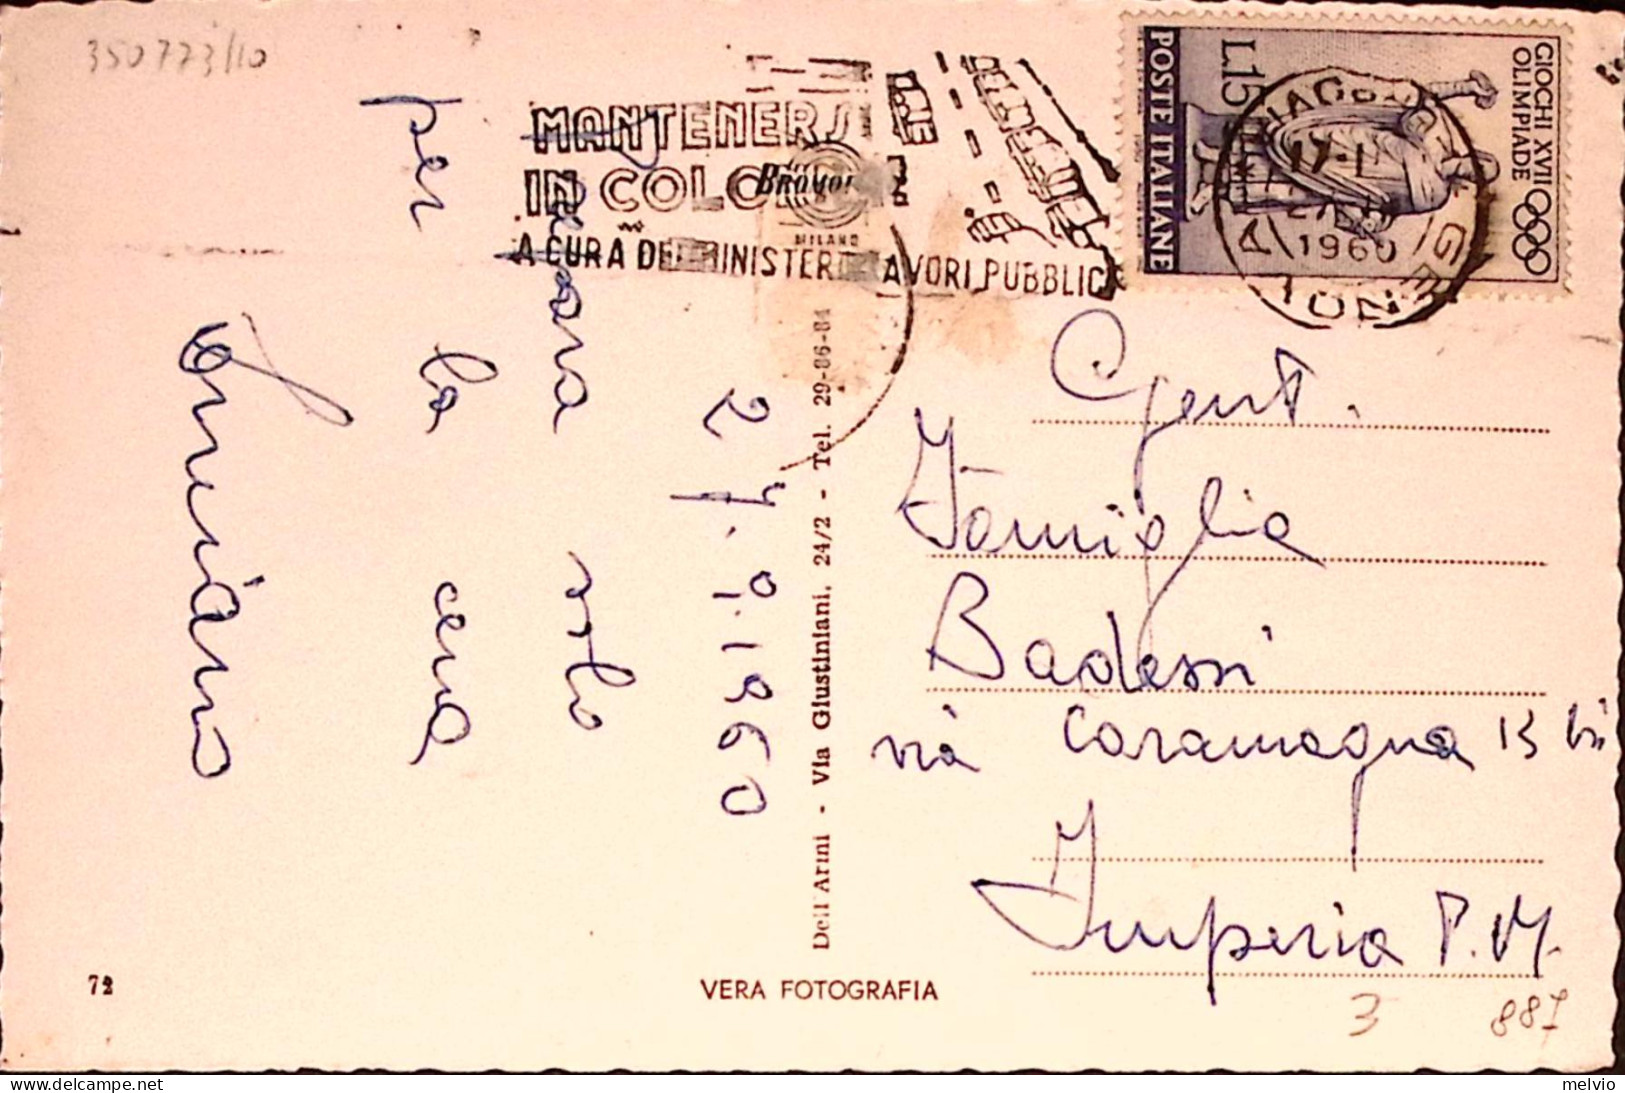 1960-GENOVA Transatlantici In Porto Viaggiata - Genova (Genua)